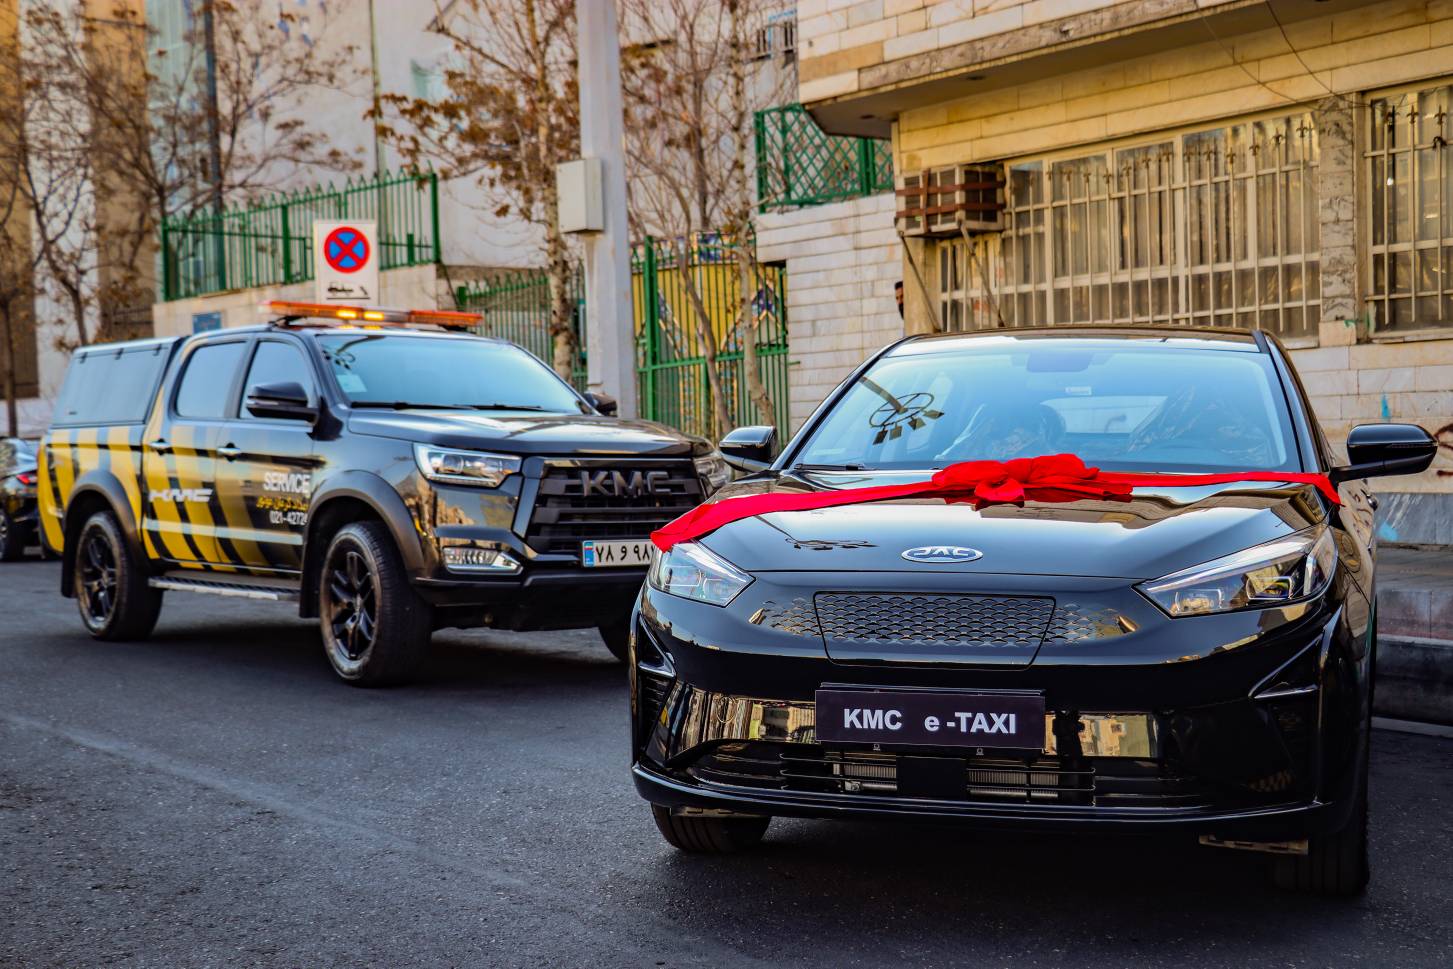 تاکسی برقی کرمان موتور KMC E-TAXI